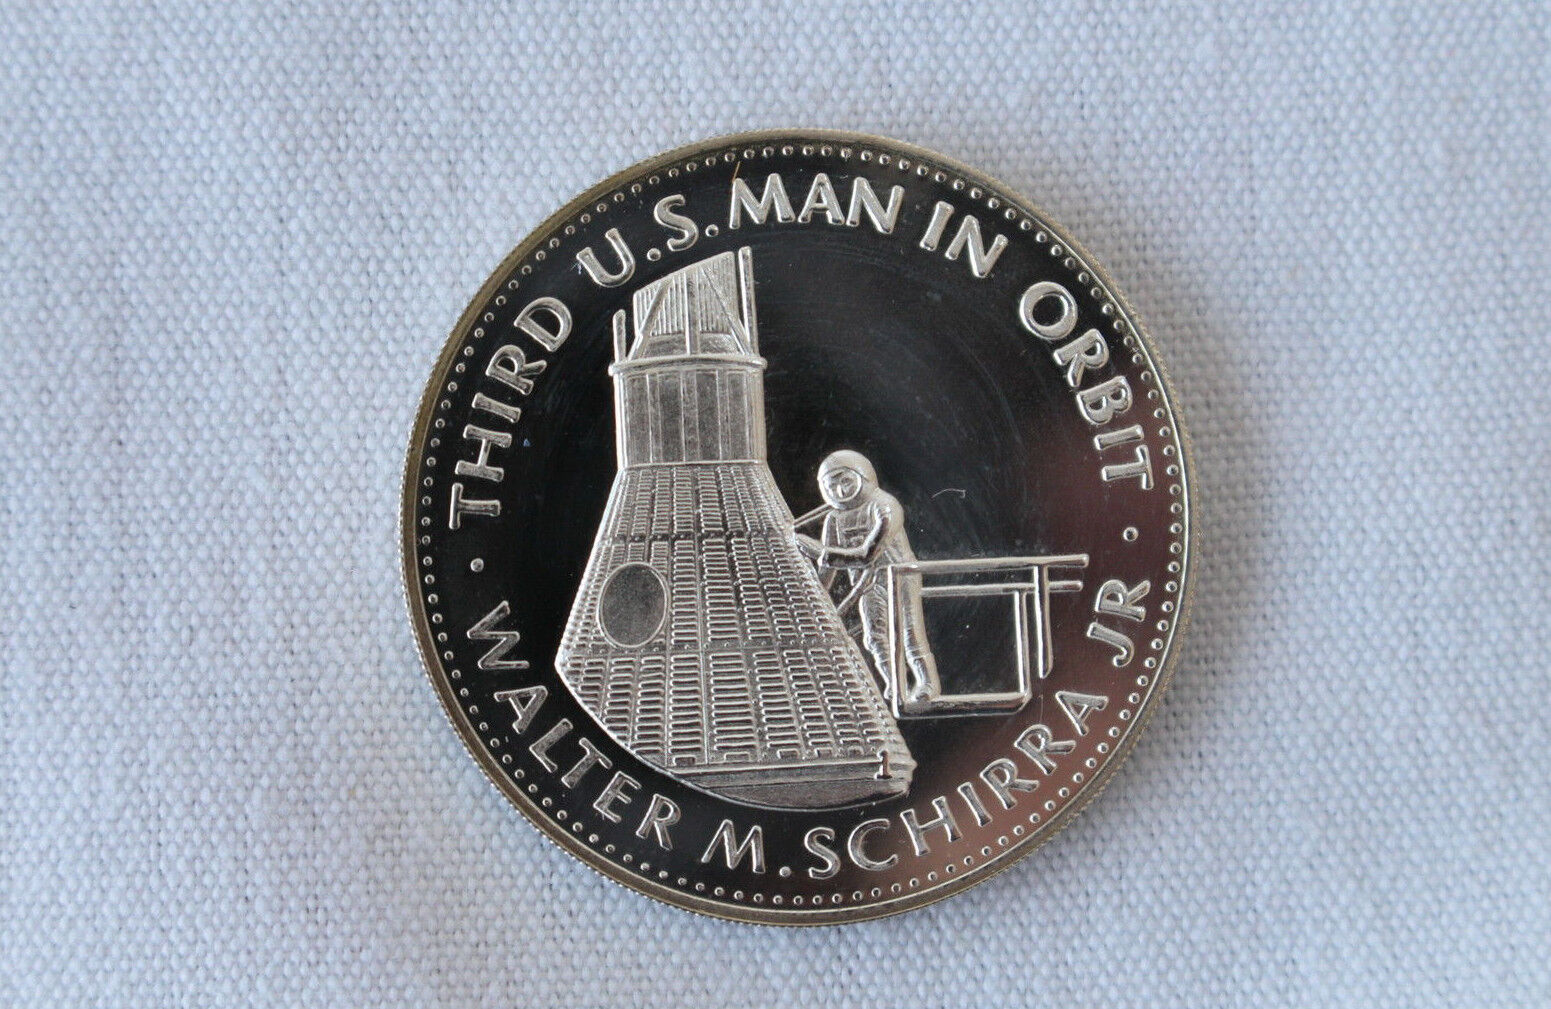 1969 Mercury VIII Walter Schirra Danbury Mint Men in Space Silver Medal E3206 Klasyczny, nowy